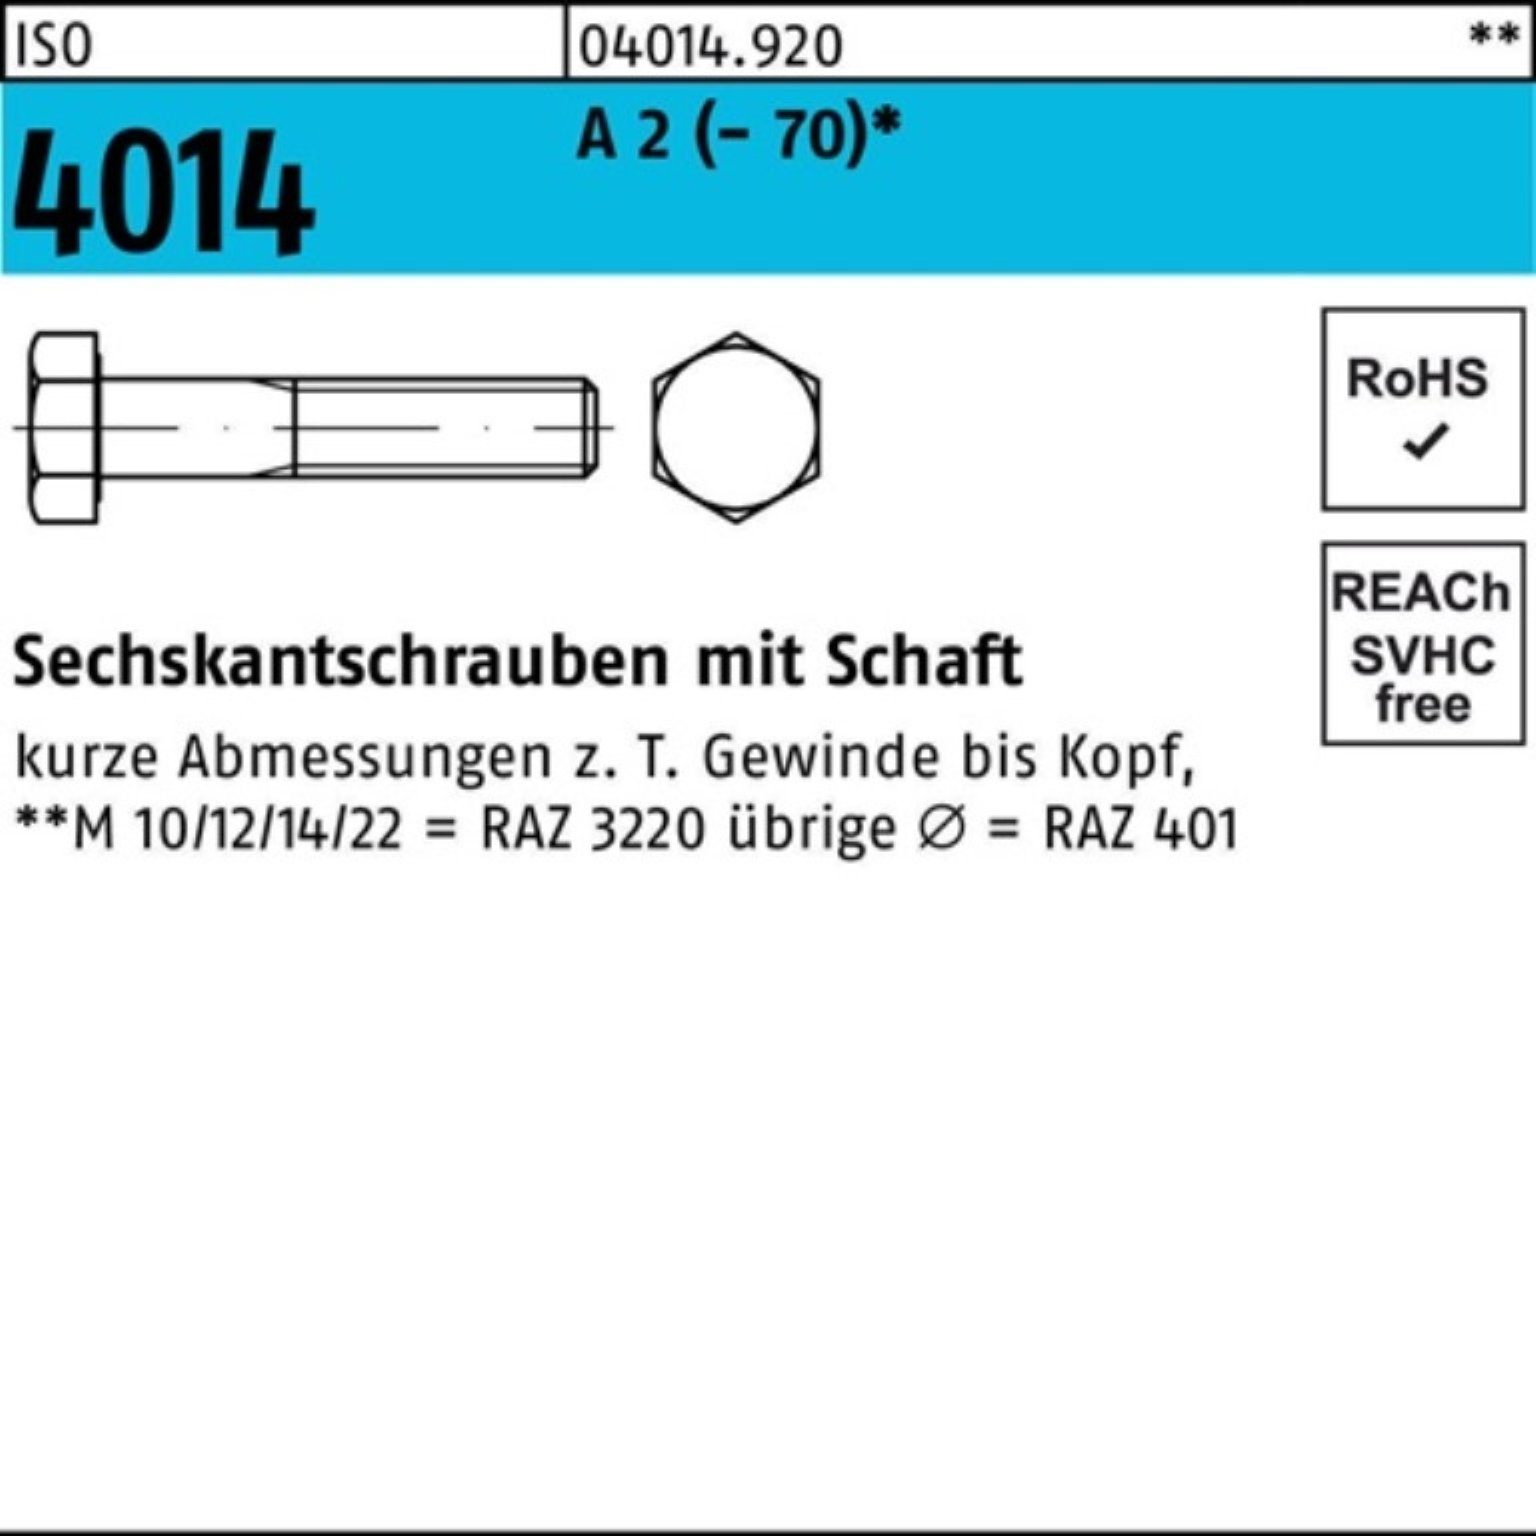 Bufab Sechskantschraube 100er Pack Sechskantschraube ISO 4014 Schaft M8x 50 A 2 (70) 100 St